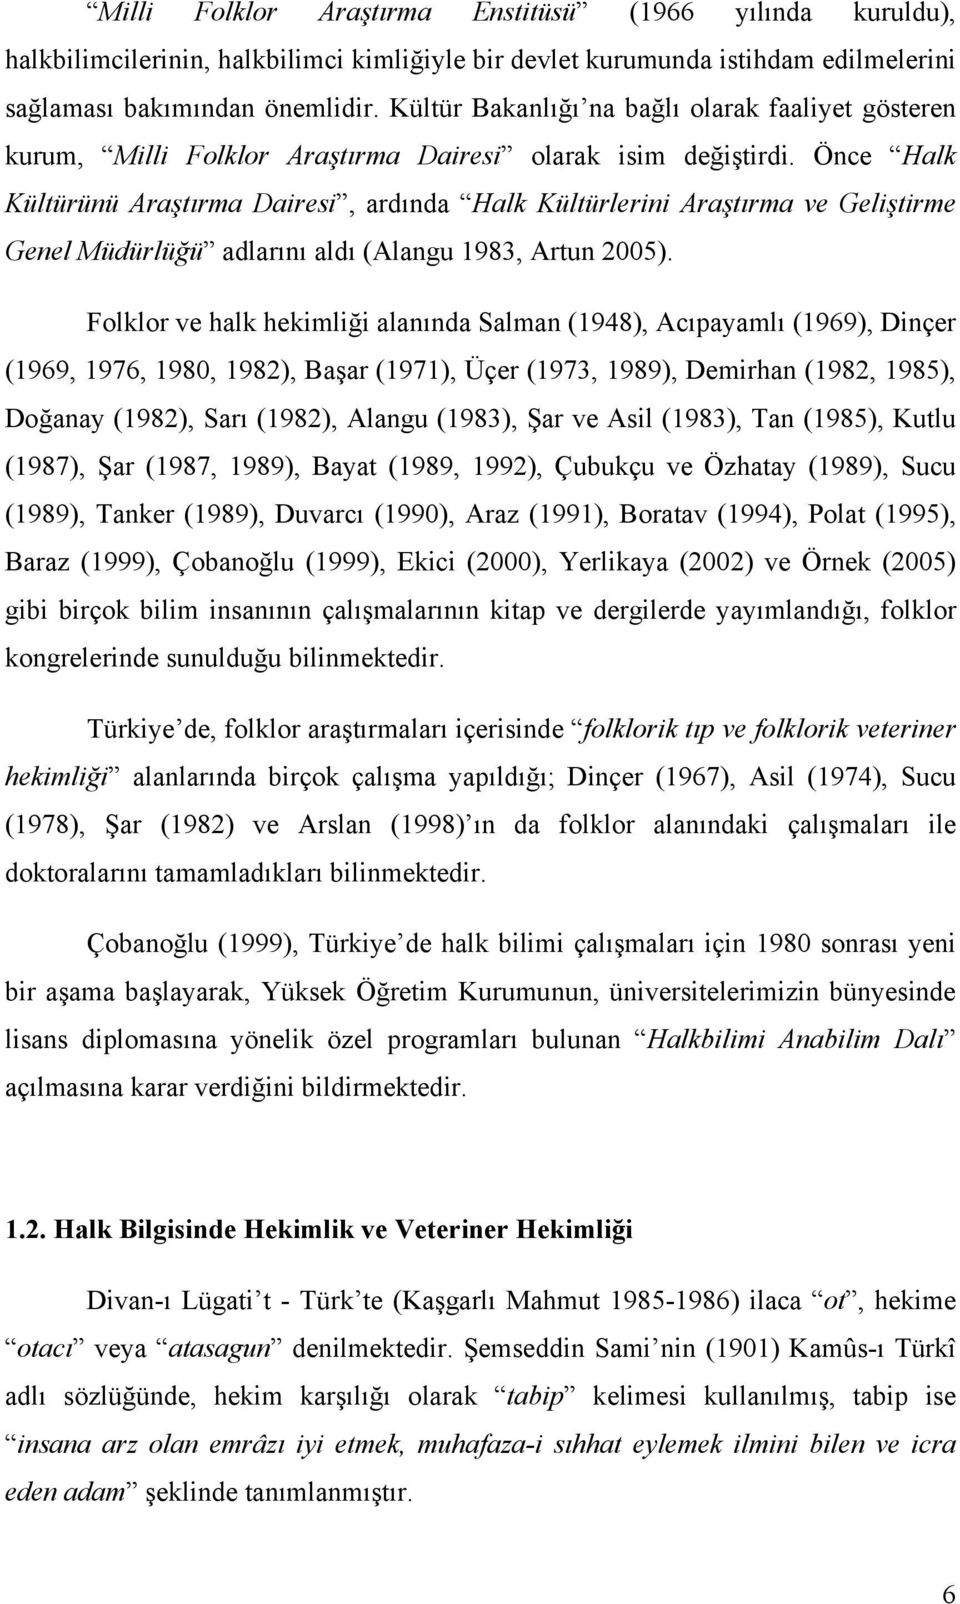 Önce Halk Kültürünü Araştırma Dairesi, ardında Halk Kültürlerini Araştırma ve Geliştirme Genel Müdürlüğü adlarını aldı (Alangu 1983, Artun 2005).